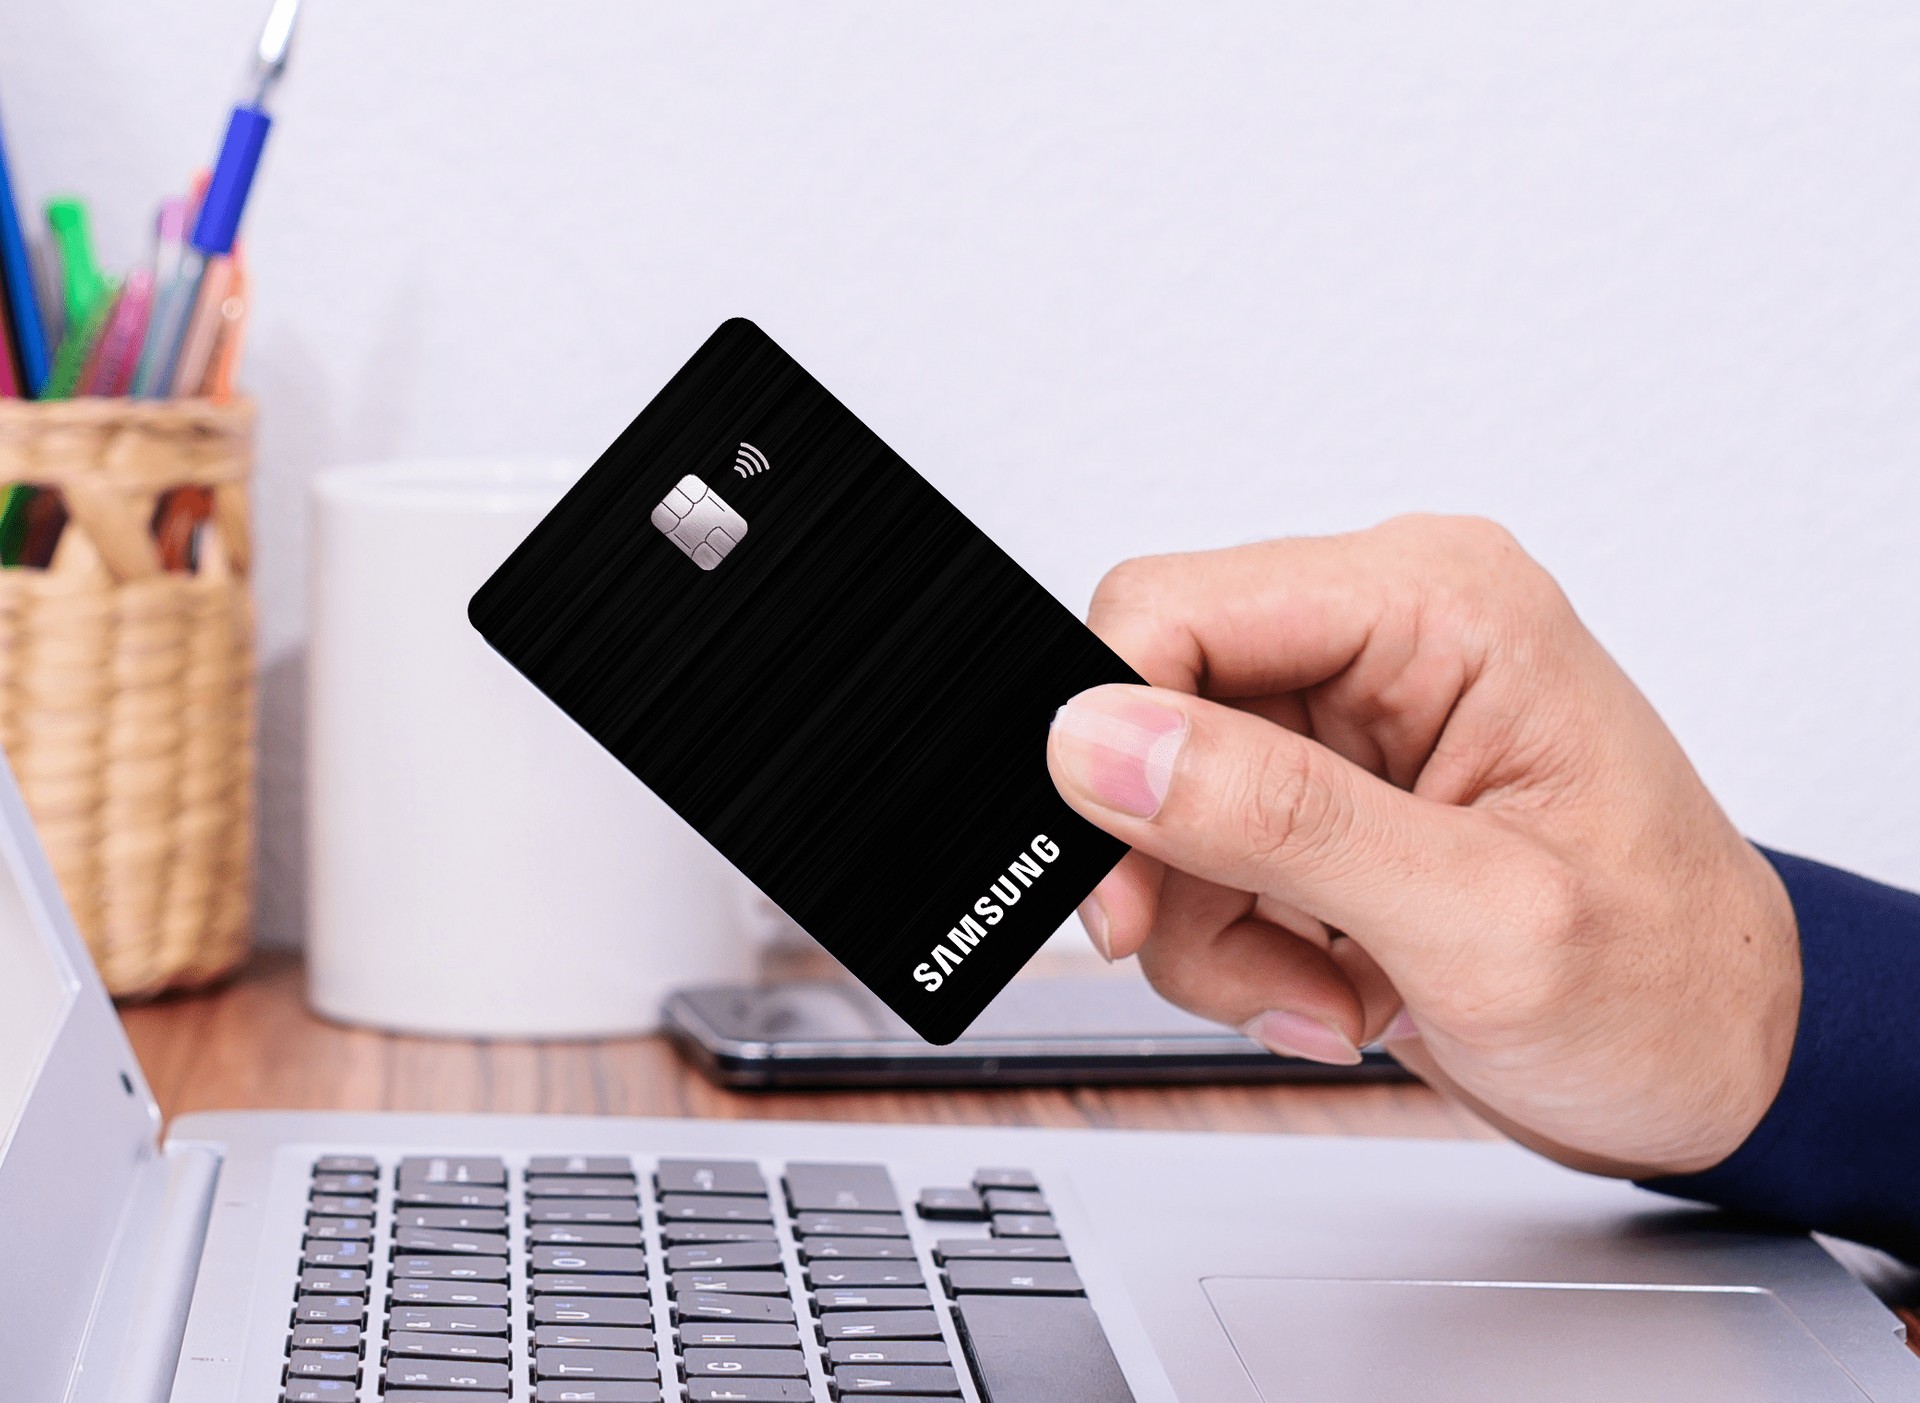 Samsung e Itaú anuncian nuevo plan de tarjeta de crédito que garantiza puntos iupp